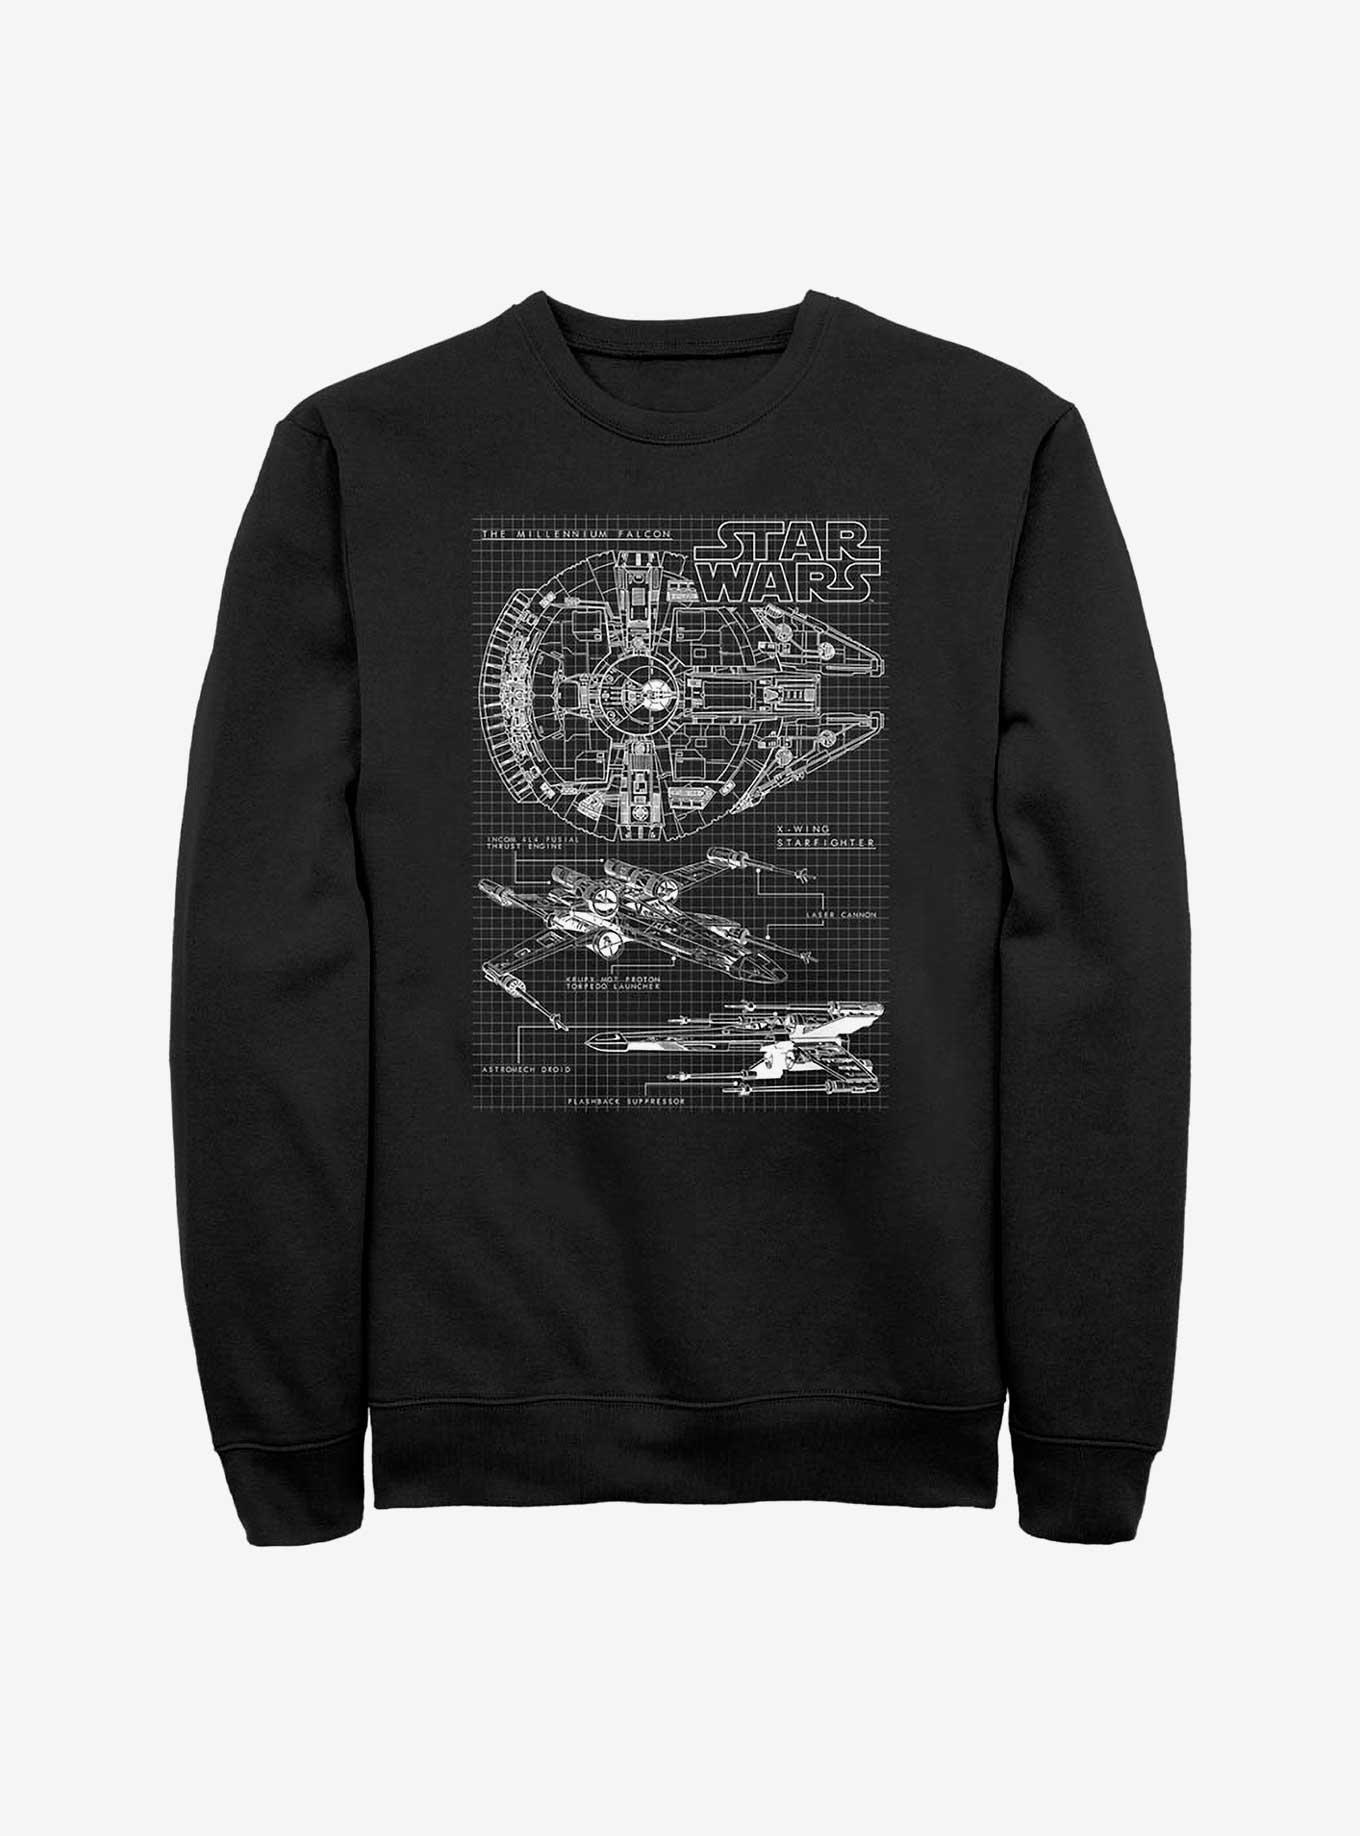 Star Wars Schematics Sweatshirt